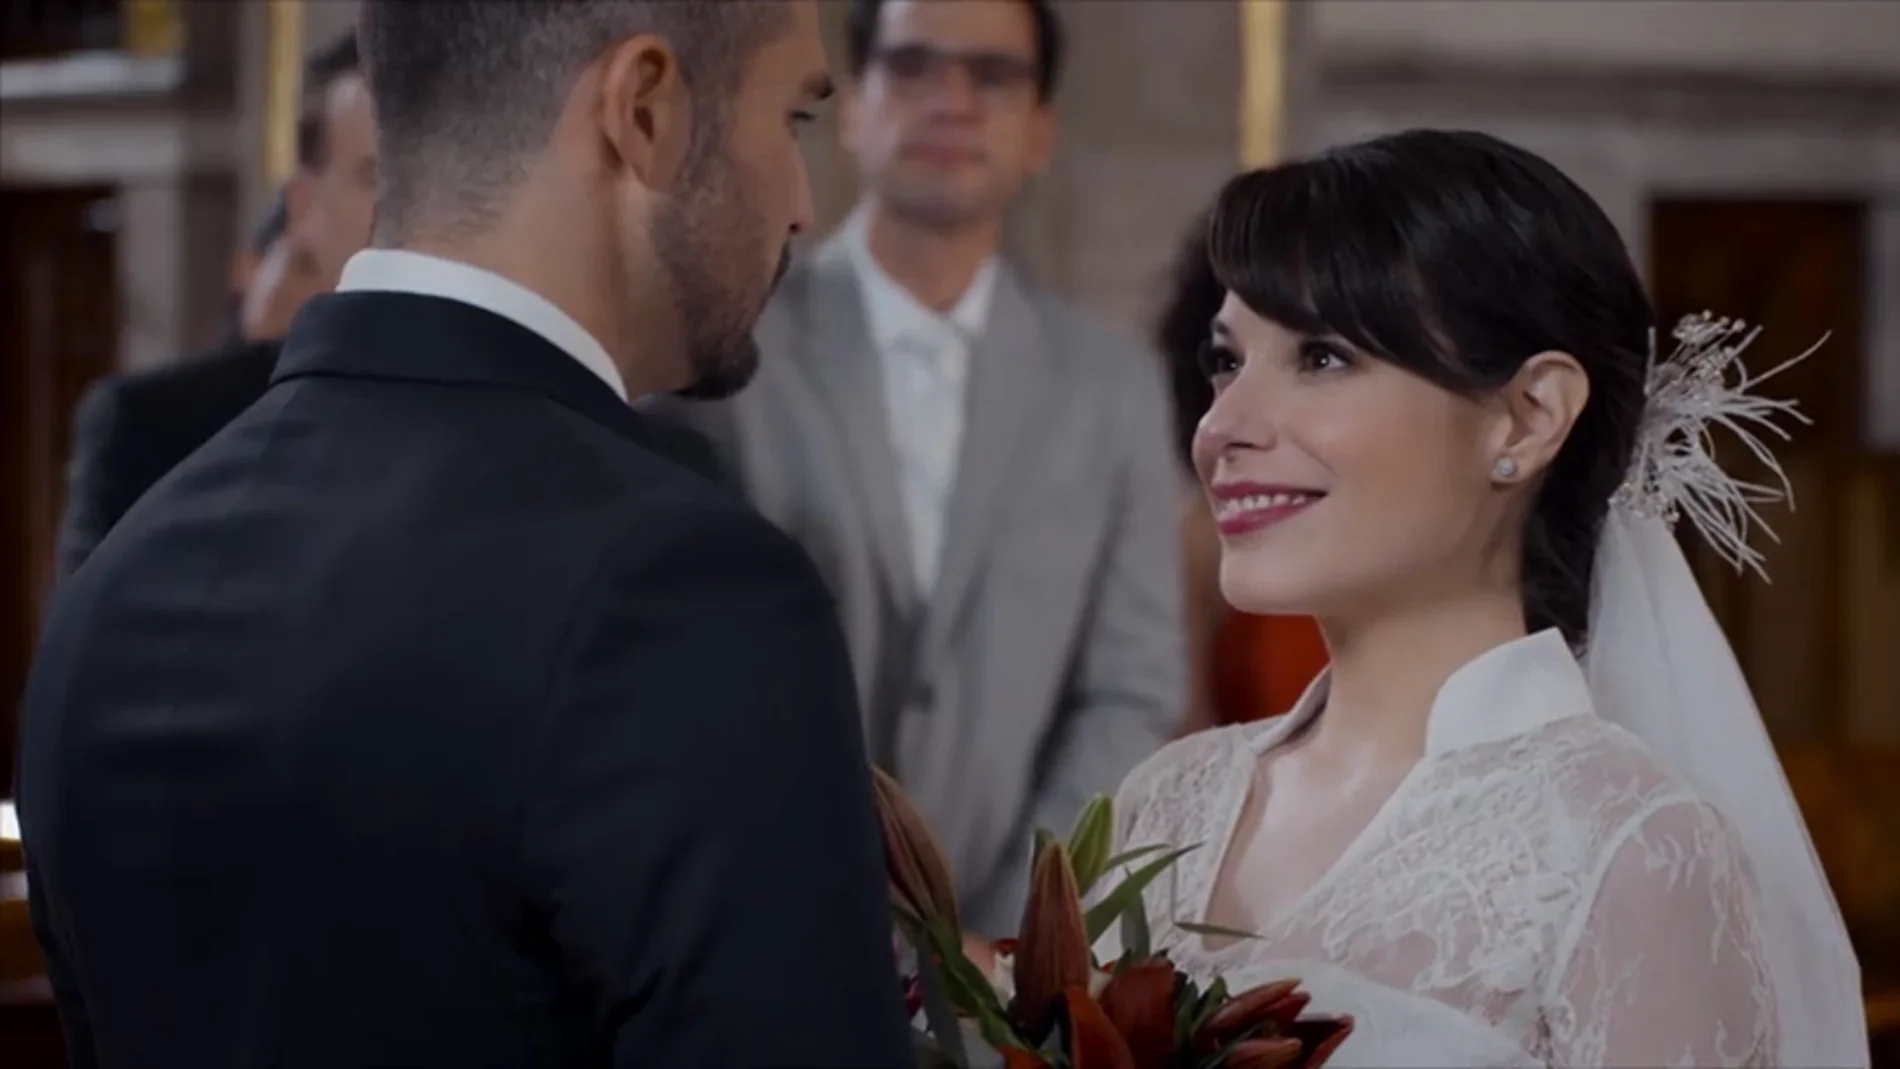 El día de la boda ha llegado: ¿se casará Pedro con Gina?